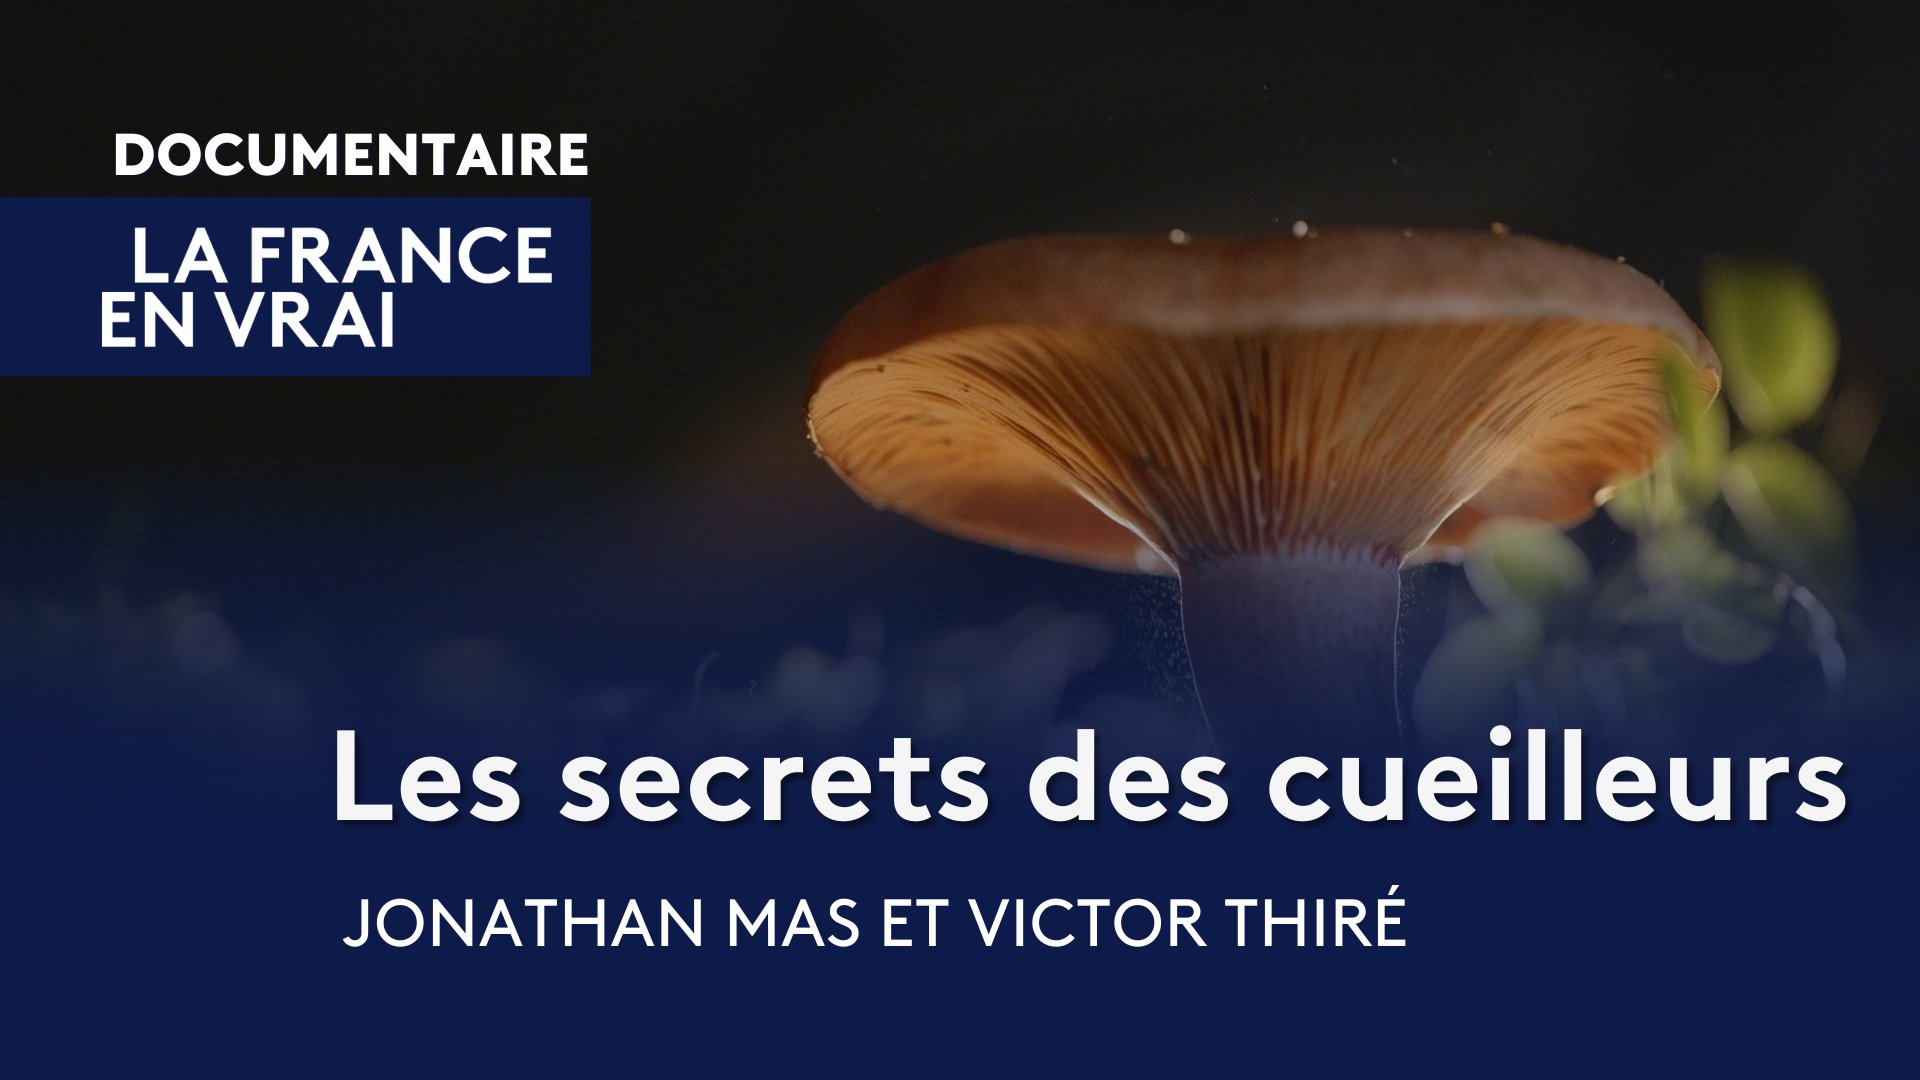 REPORTAGE. Les champignons de Paris luttent pour survivre